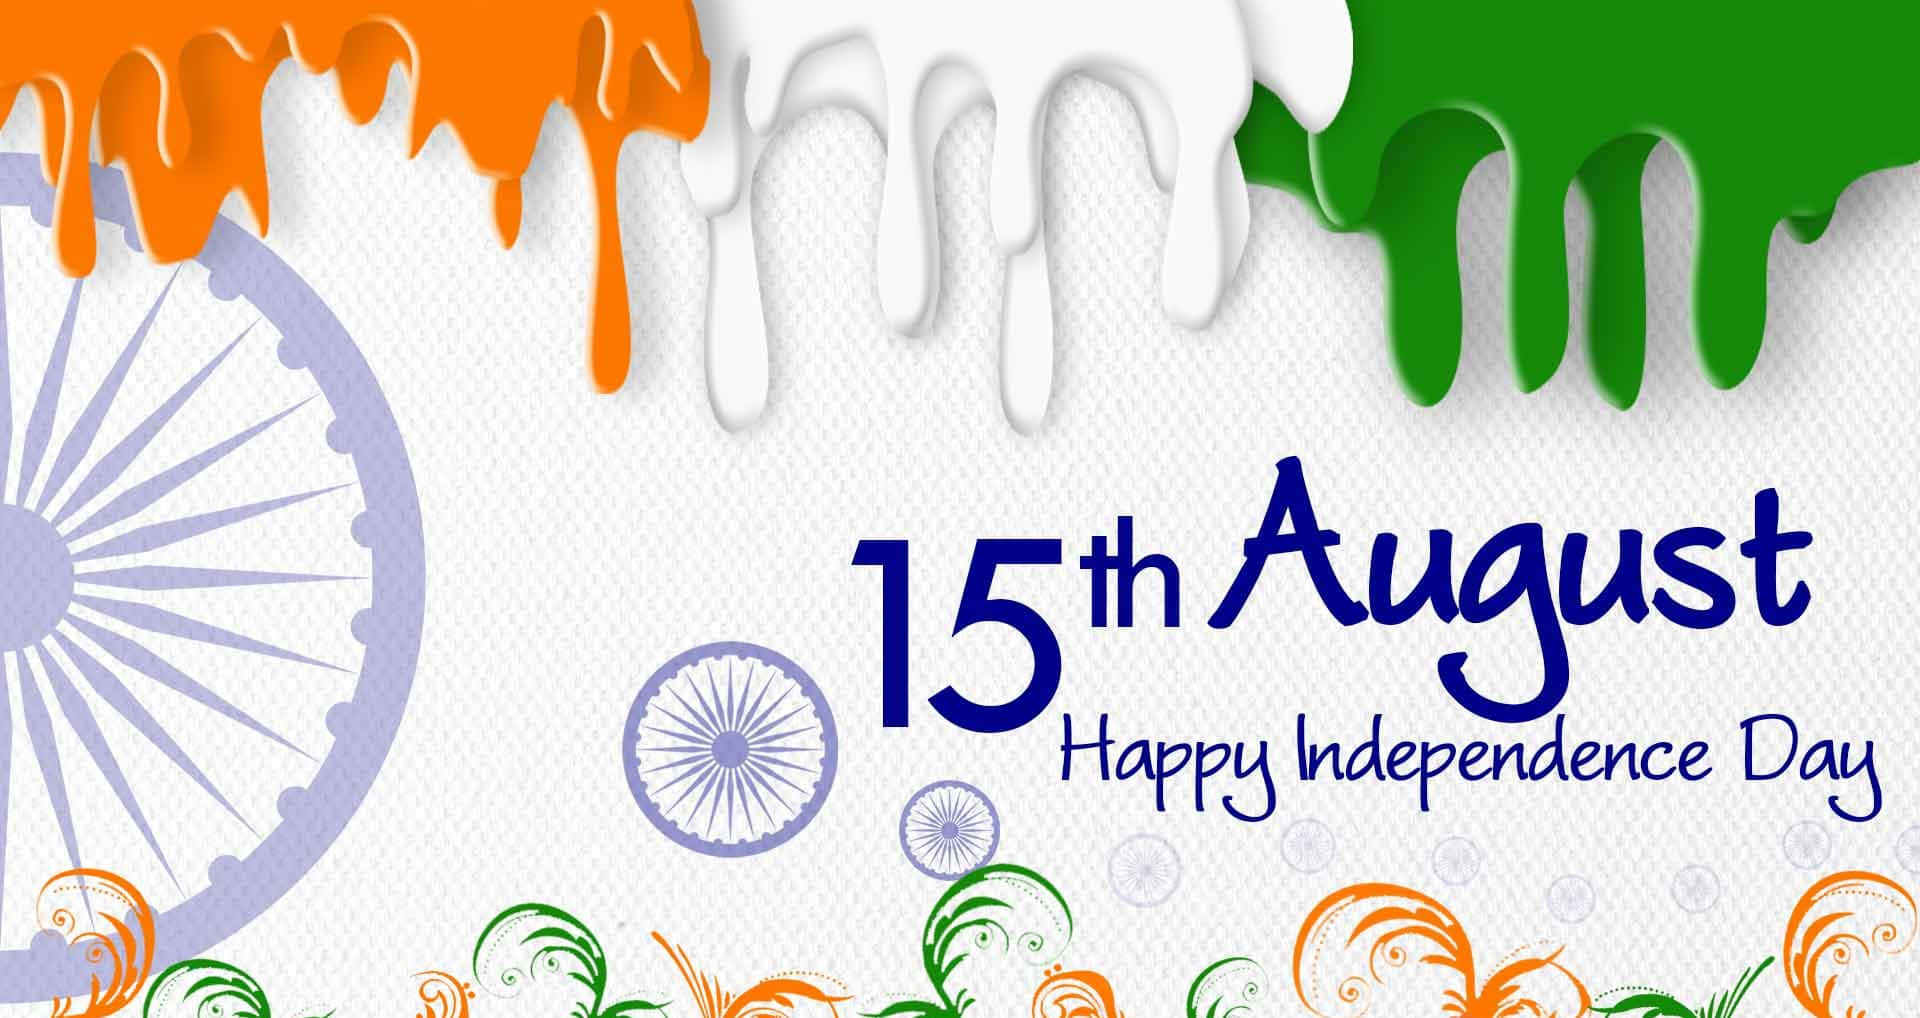 Feiernsie Die Freiheit An Diesem Unabhängigkeitstag!